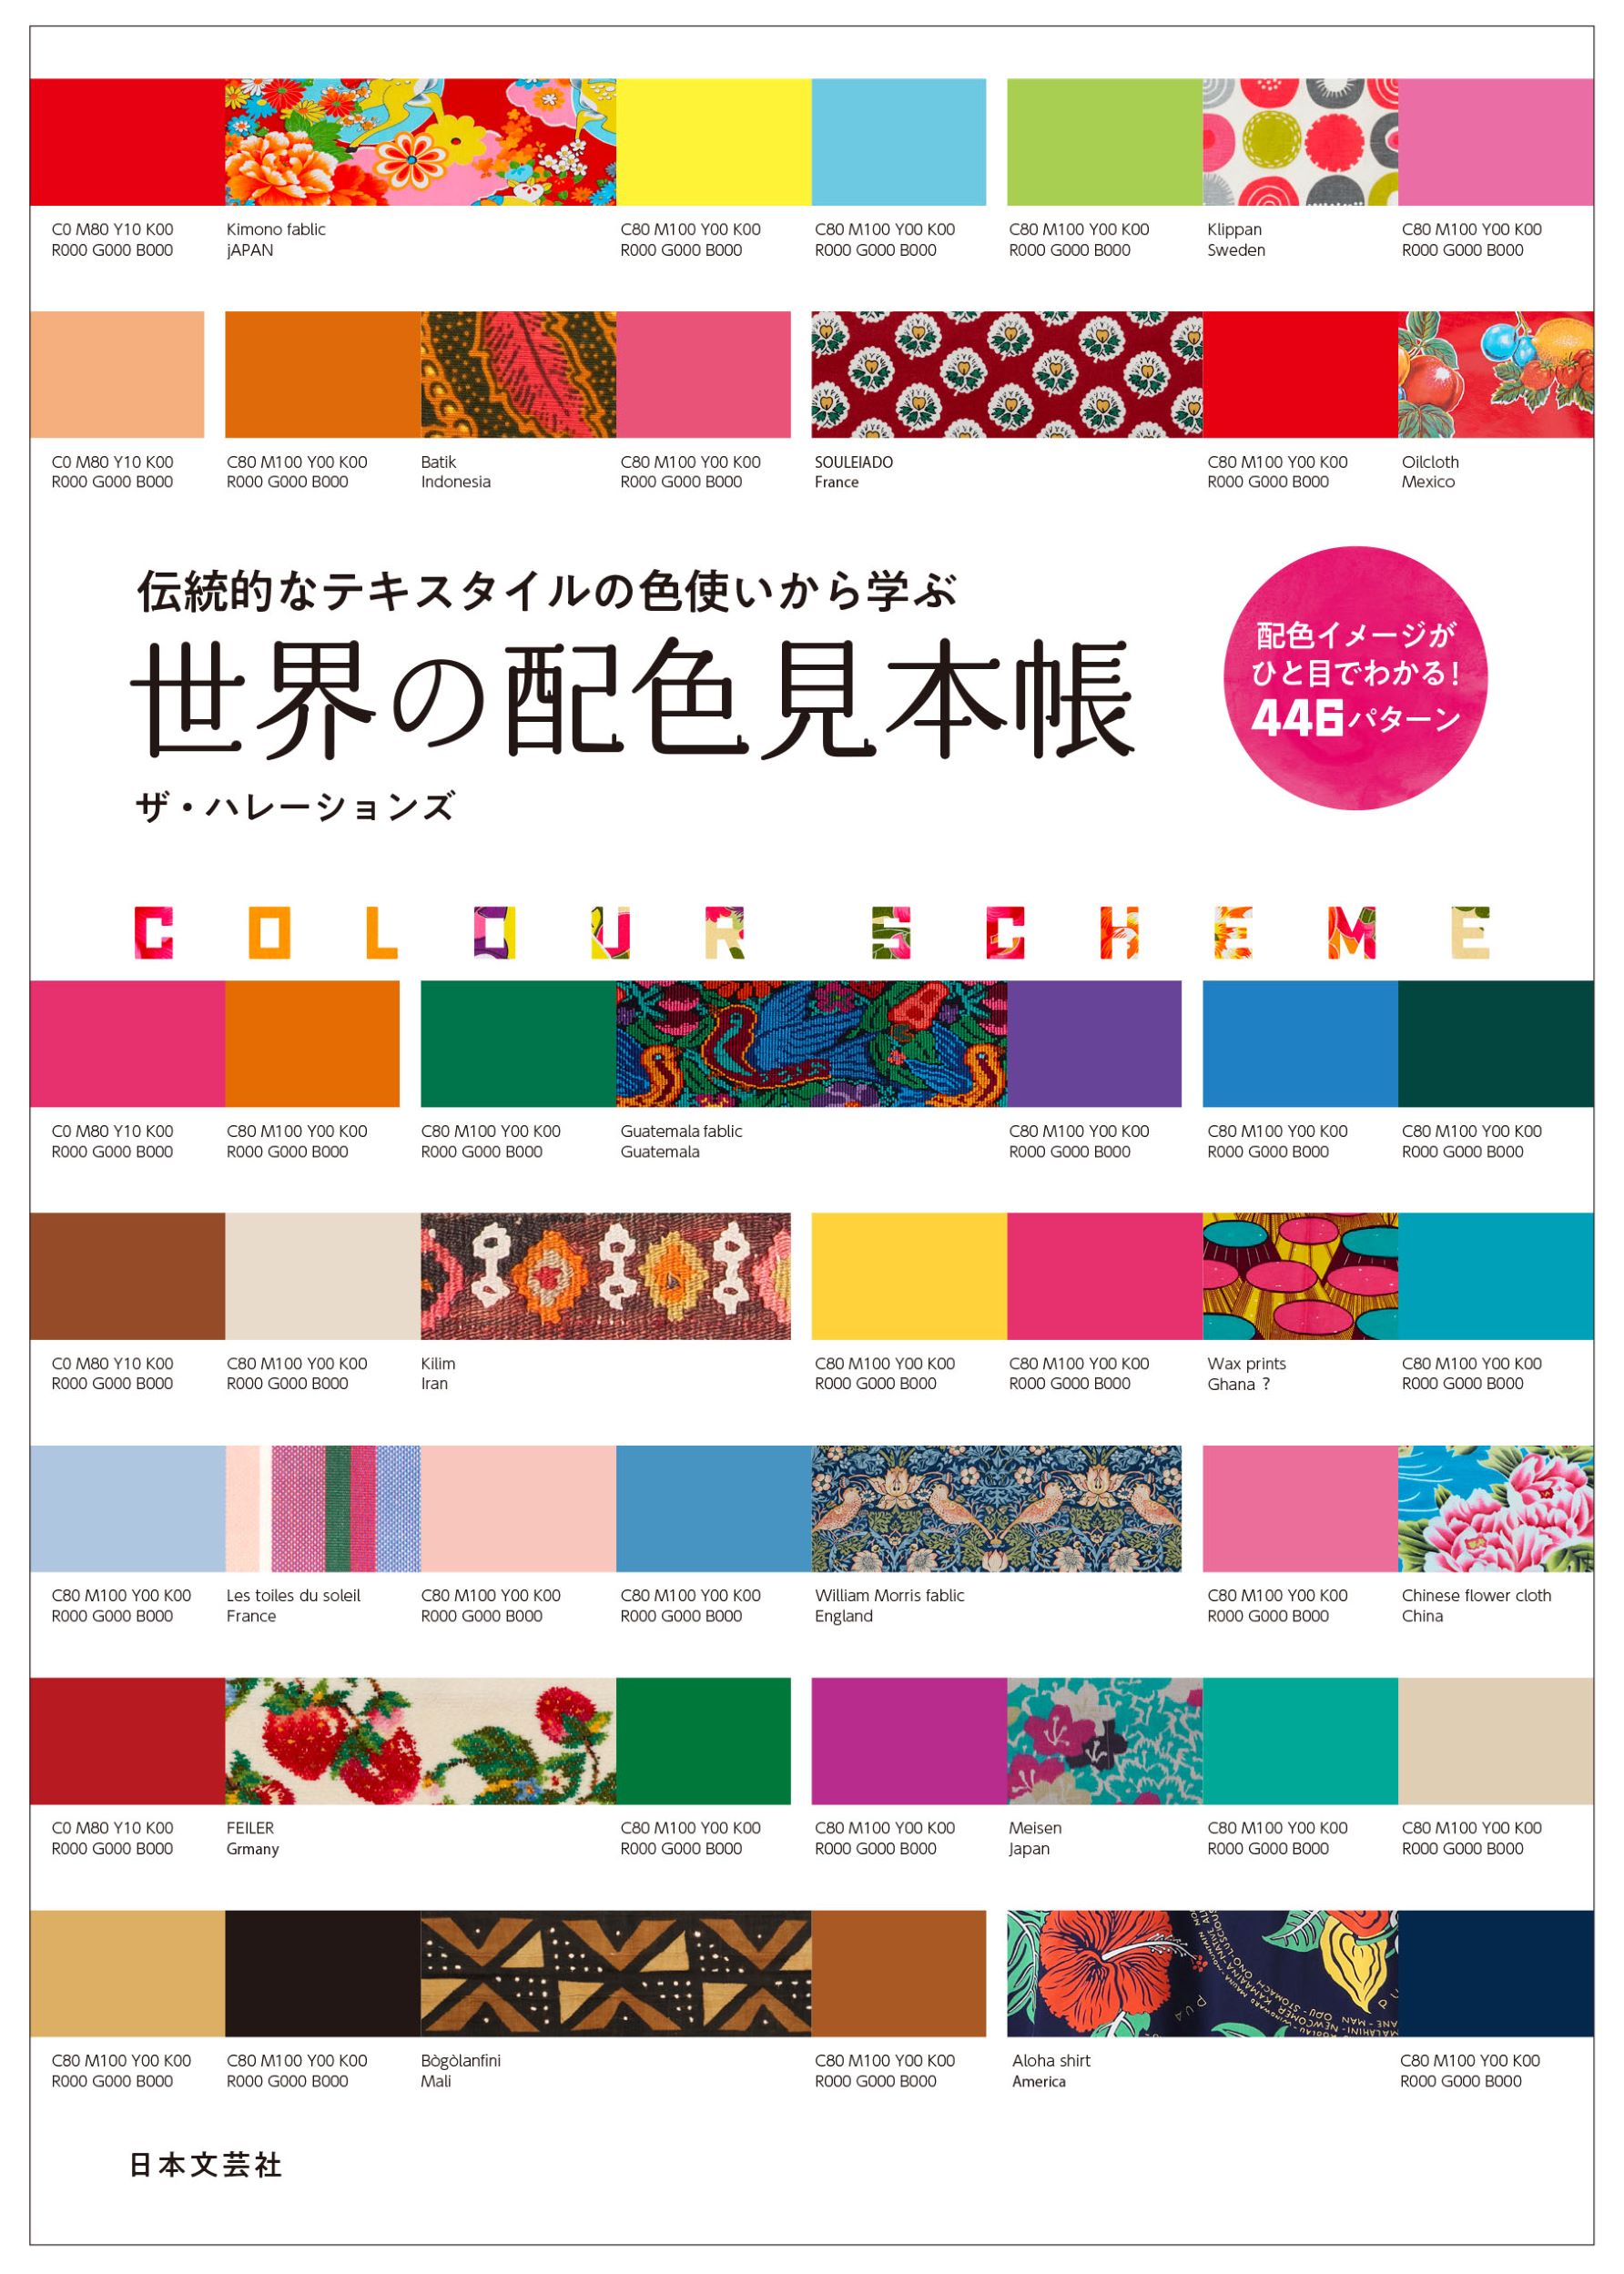 世界各地の伝統的なテキスタイルの色使いから学ぶ配色本 世界の配色見本帳 9 17発売 株式会社日本文芸社のプレスリリース